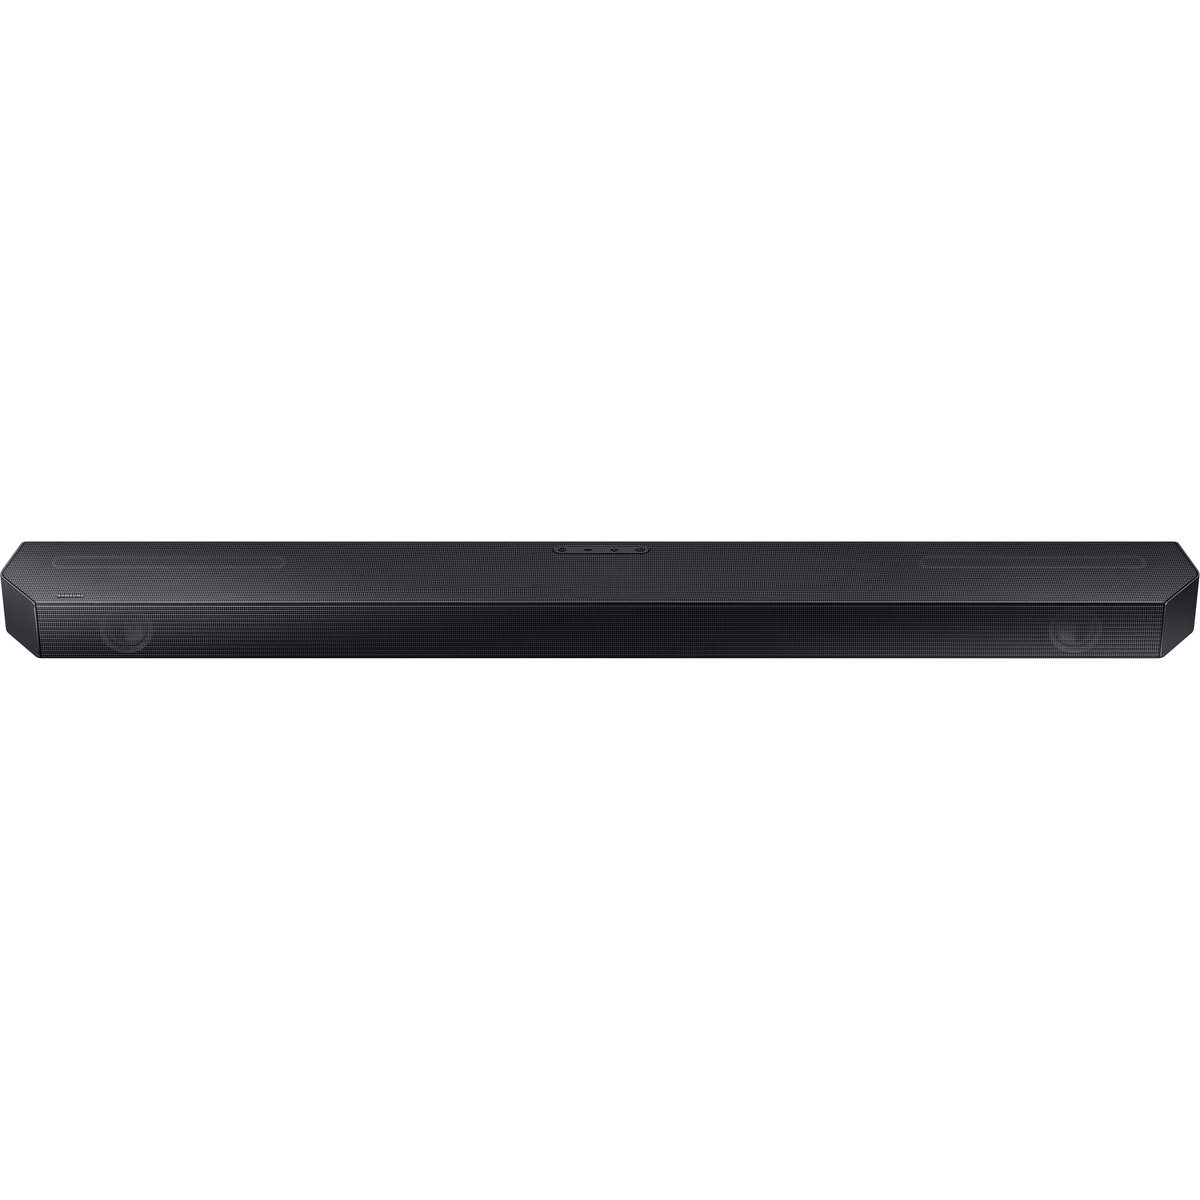 Samsung Q600C Q-Symphony 3.1.2ch Soundbar with Wireless Subwoofer - Black | HW-Q600C/XU from Samsung - DID Electrical